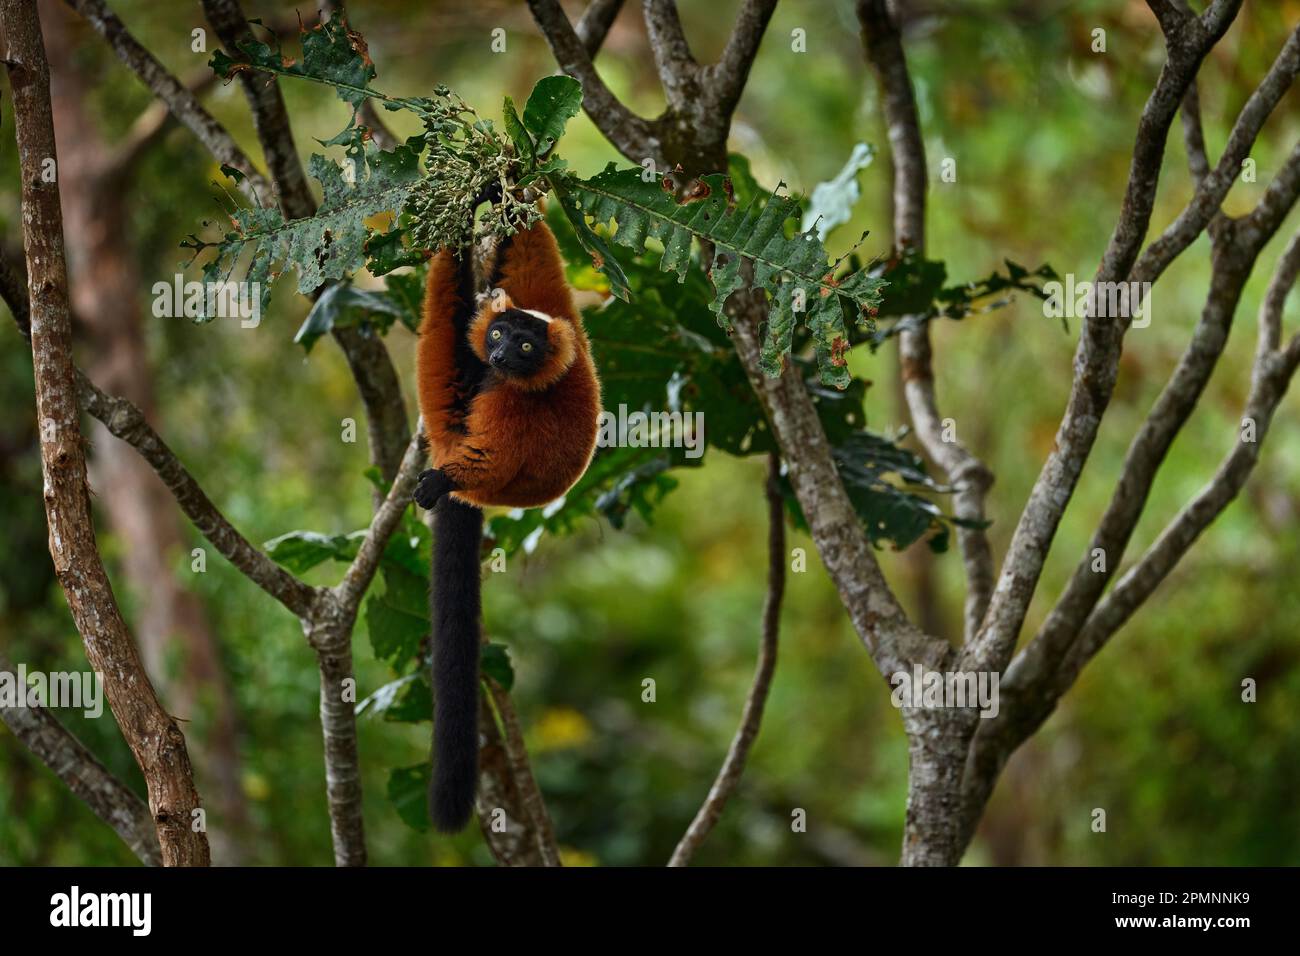 Fauna selvatica del Madagascar. Lemur rosso ruffed, Varecia rubra, Parco Nazionale Andasibe - Mantadia in Madagascar. Scimmia rossa marrone sull'albero, habitat naturale in Foto Stock